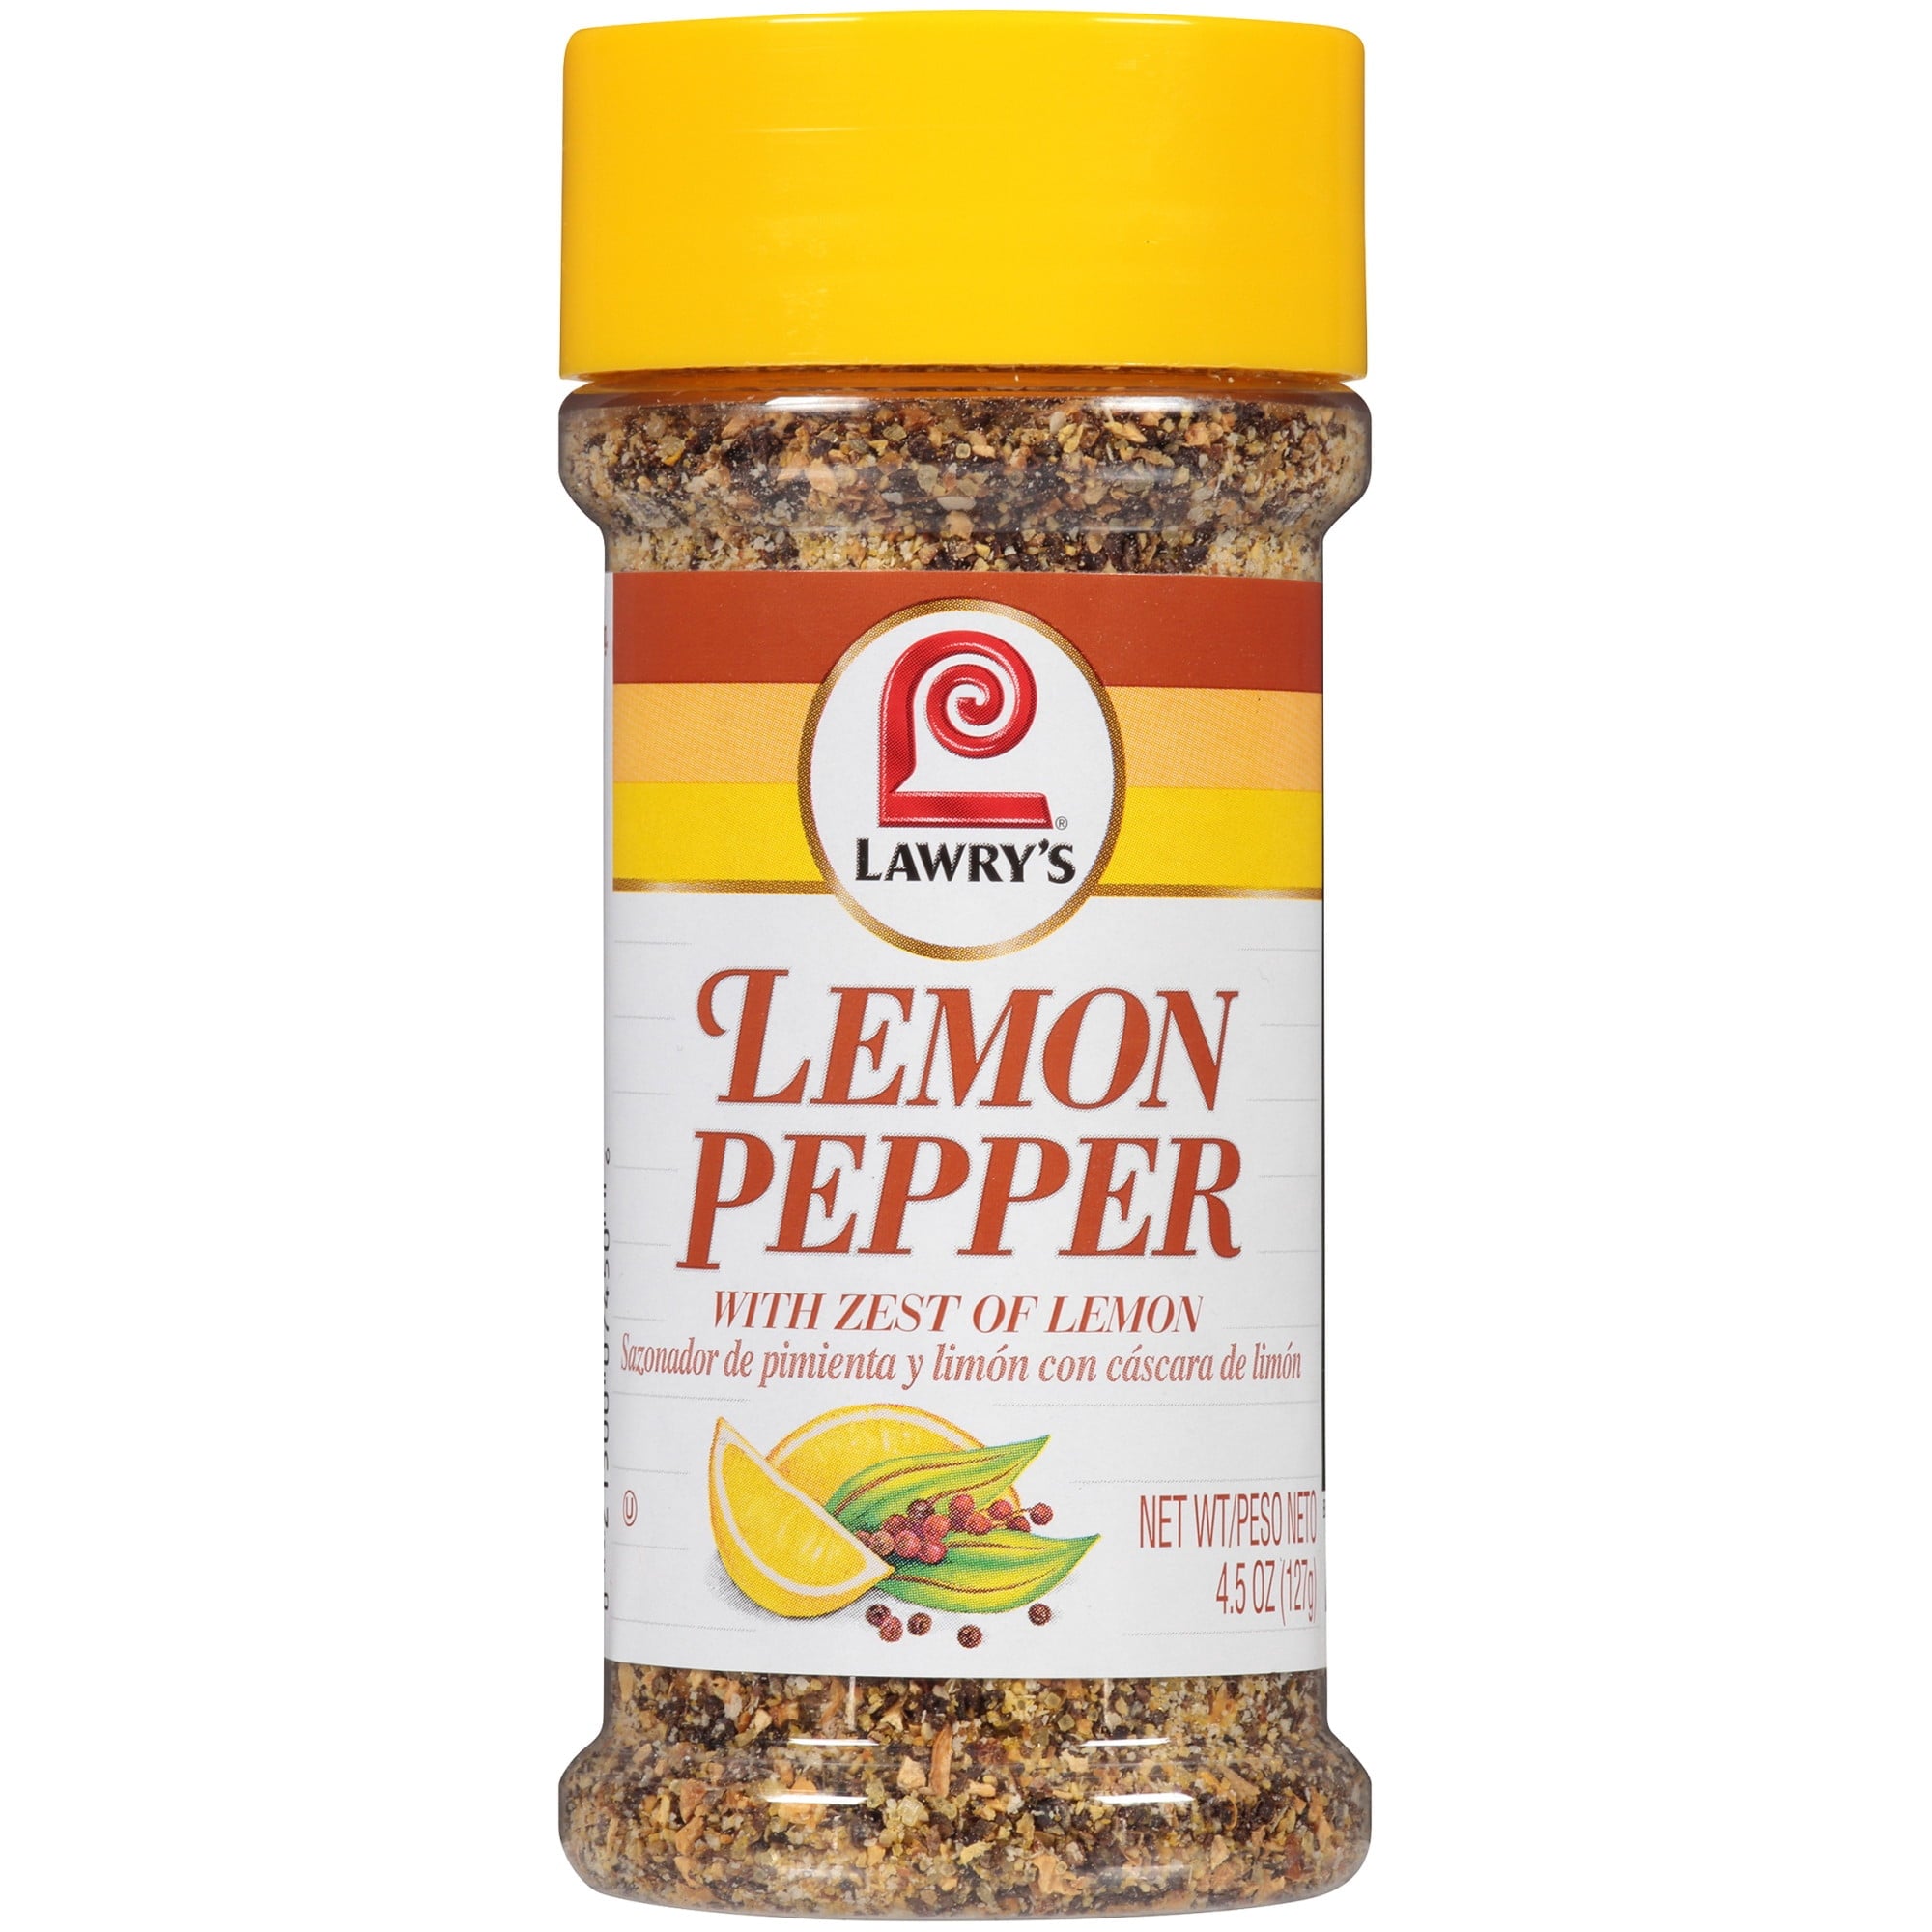 Lawry's Lemon Pepper - 2.25 oz bottle